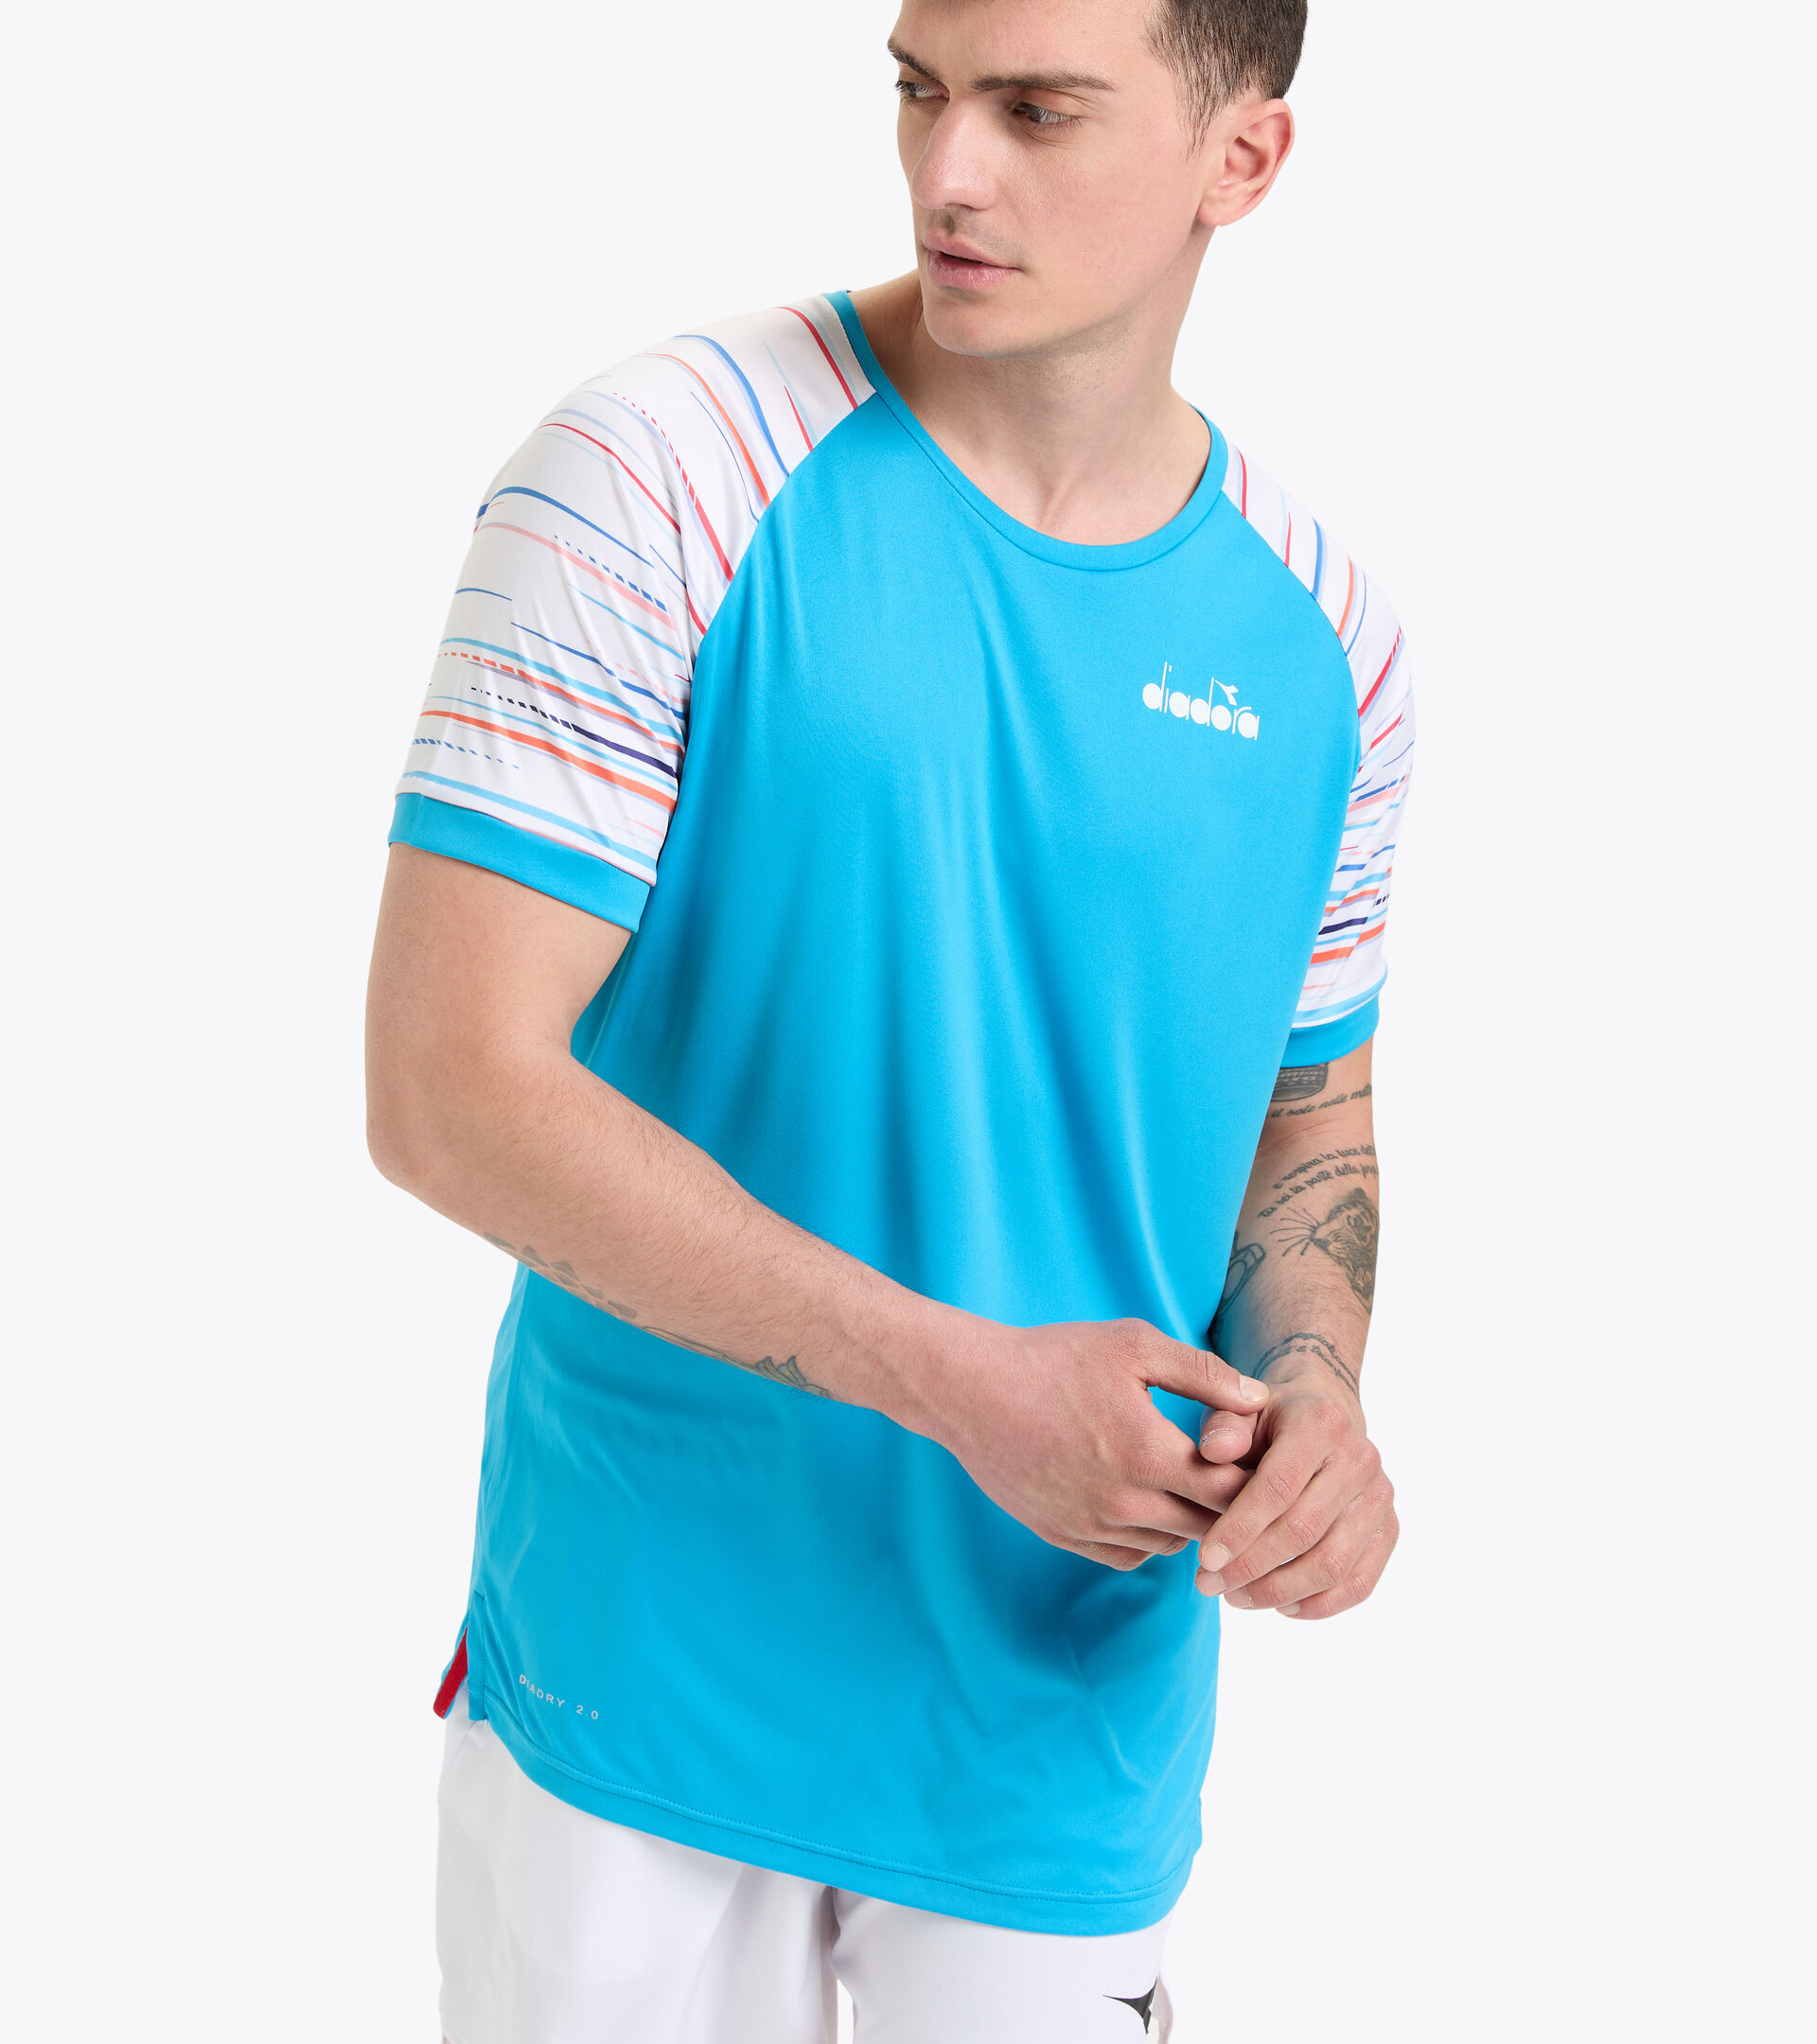 Tennis T-shirt - Men SS T-SHIRT TURQUOISE BLUE - Diadora